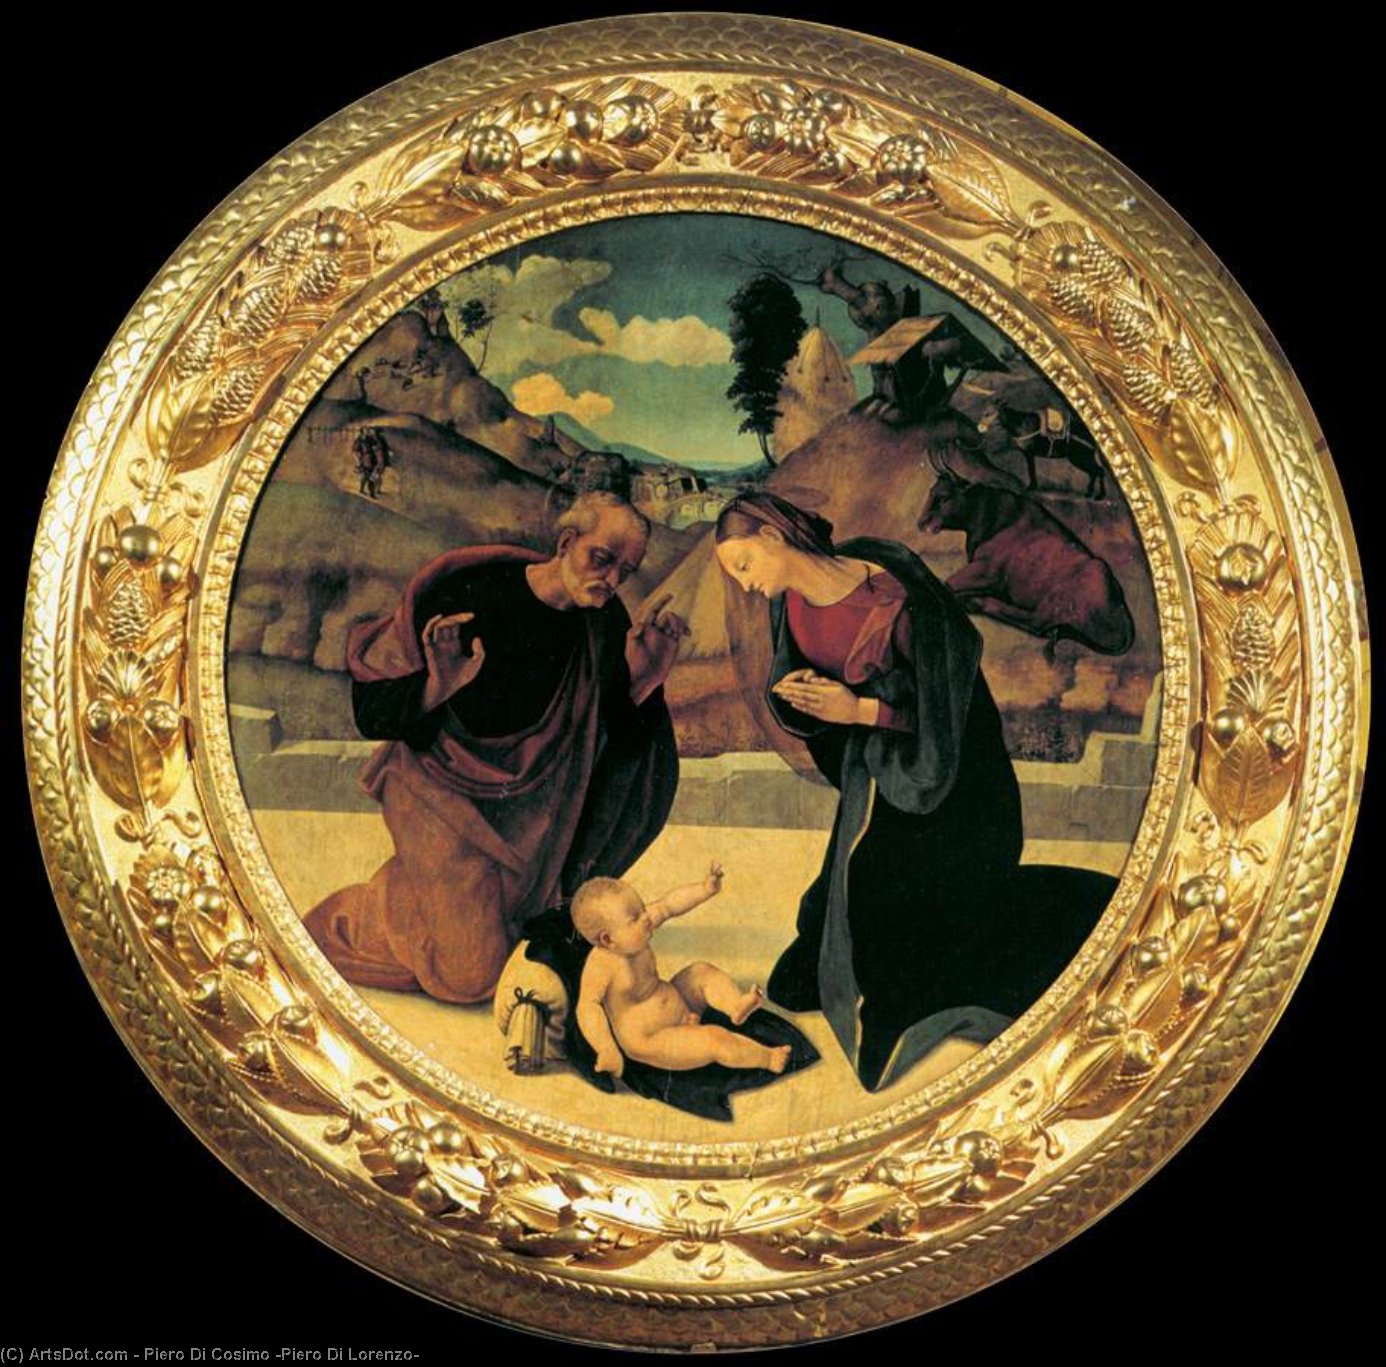 购买 博物馆艺术复制品，艺术复制品，绘画复制品，博物馆质量版画，美术复制品，着名绘画复制品，博物馆品质复制品，帆布艺术版画 《儿童权利公约》。, 1510 通过 Piero Di Cosimo (Piero Di Lorenzo) (1462-1522, Italy) | ArtsDot.com